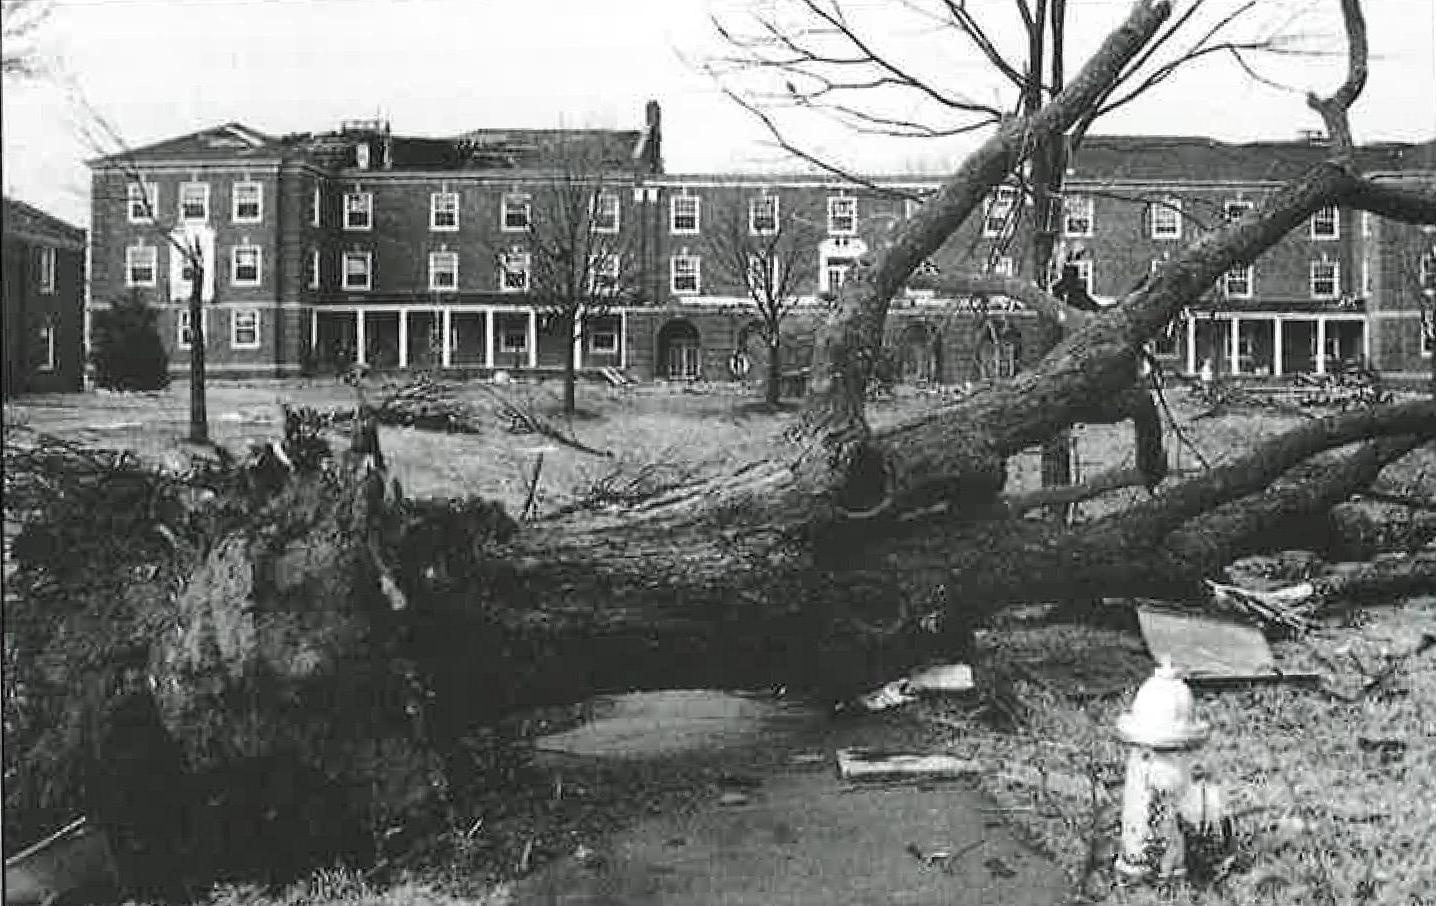 The Browning, Clement, Harned, pictured, 哈维尔和阿奇伍德建筑在1月11日的一次地震中严重受损. 1999年22日，龙卷风袭击了克拉克斯维尔.